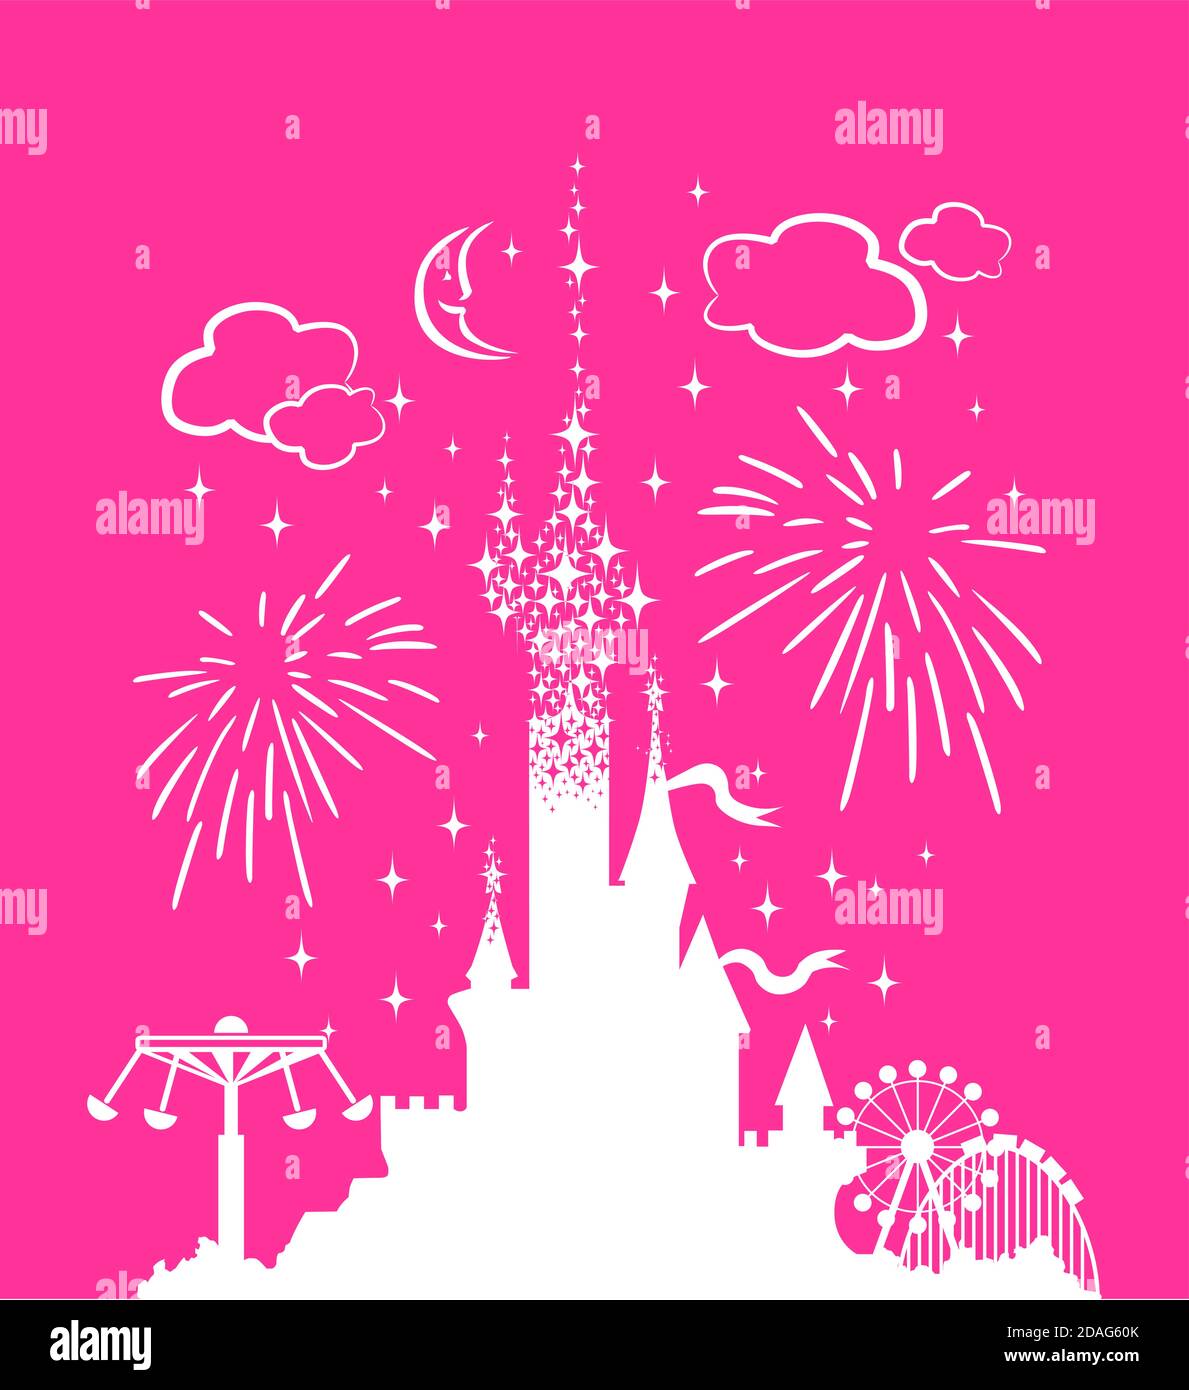 Princess Castle. Fantasy rosa Palast auf dem Hintergrund von Feuerwerk und Sternen. Märchenhafter Königlicher Mittelalterlicher Paradies Palast. Cartoon Vektorgrafik. Stock Vektor